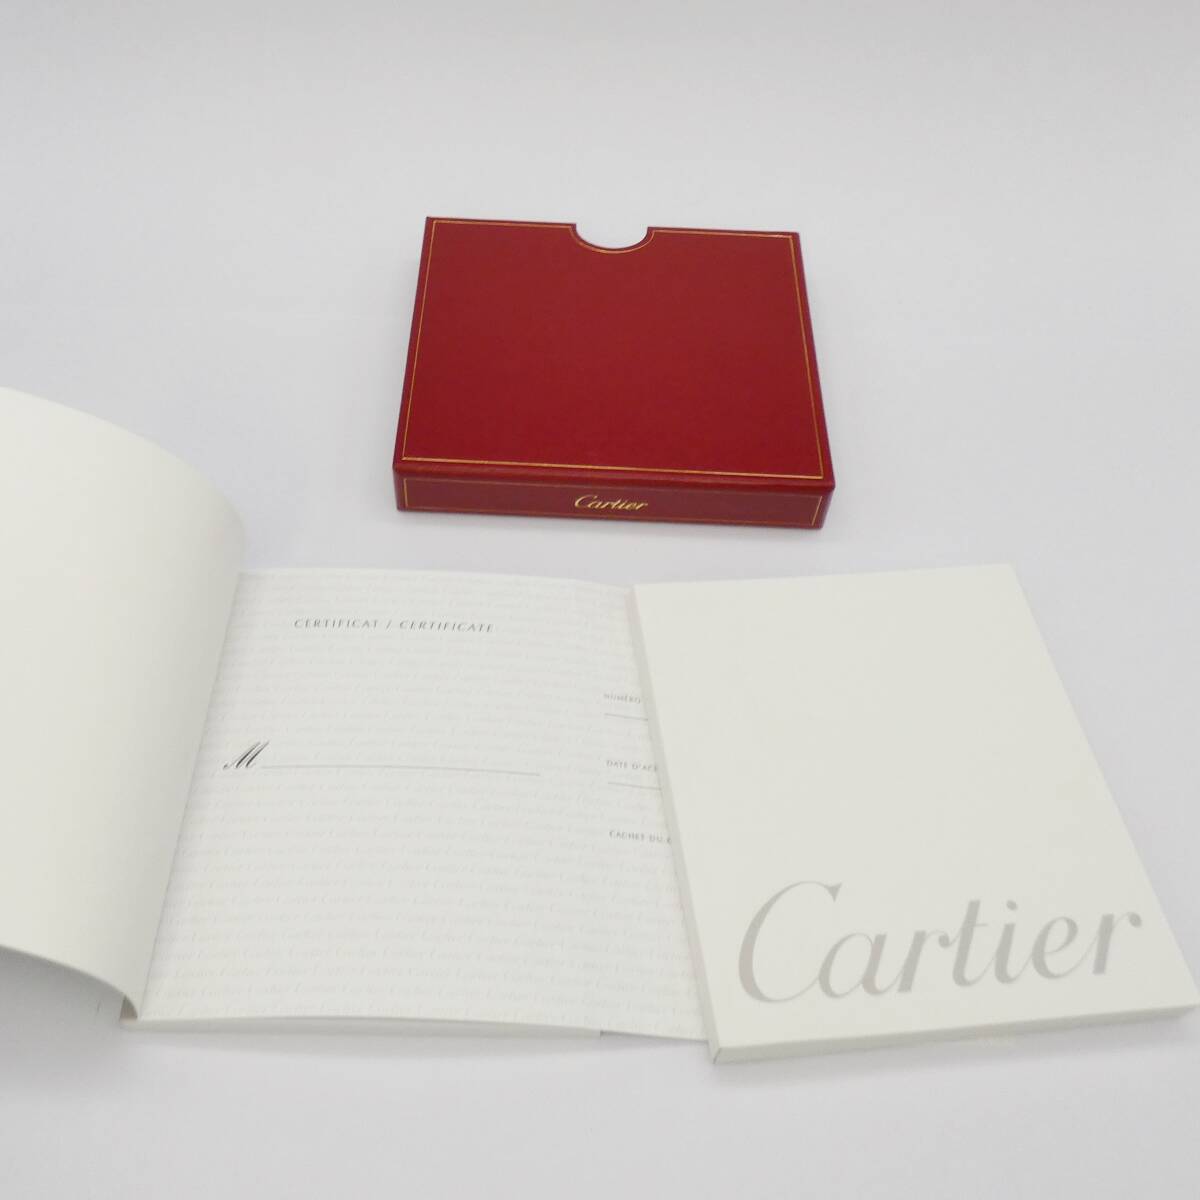 ギャランティ (シリアル記入済 高島屋Cartier) 説明書 時計用 カルティエ Cartier ④_画像2